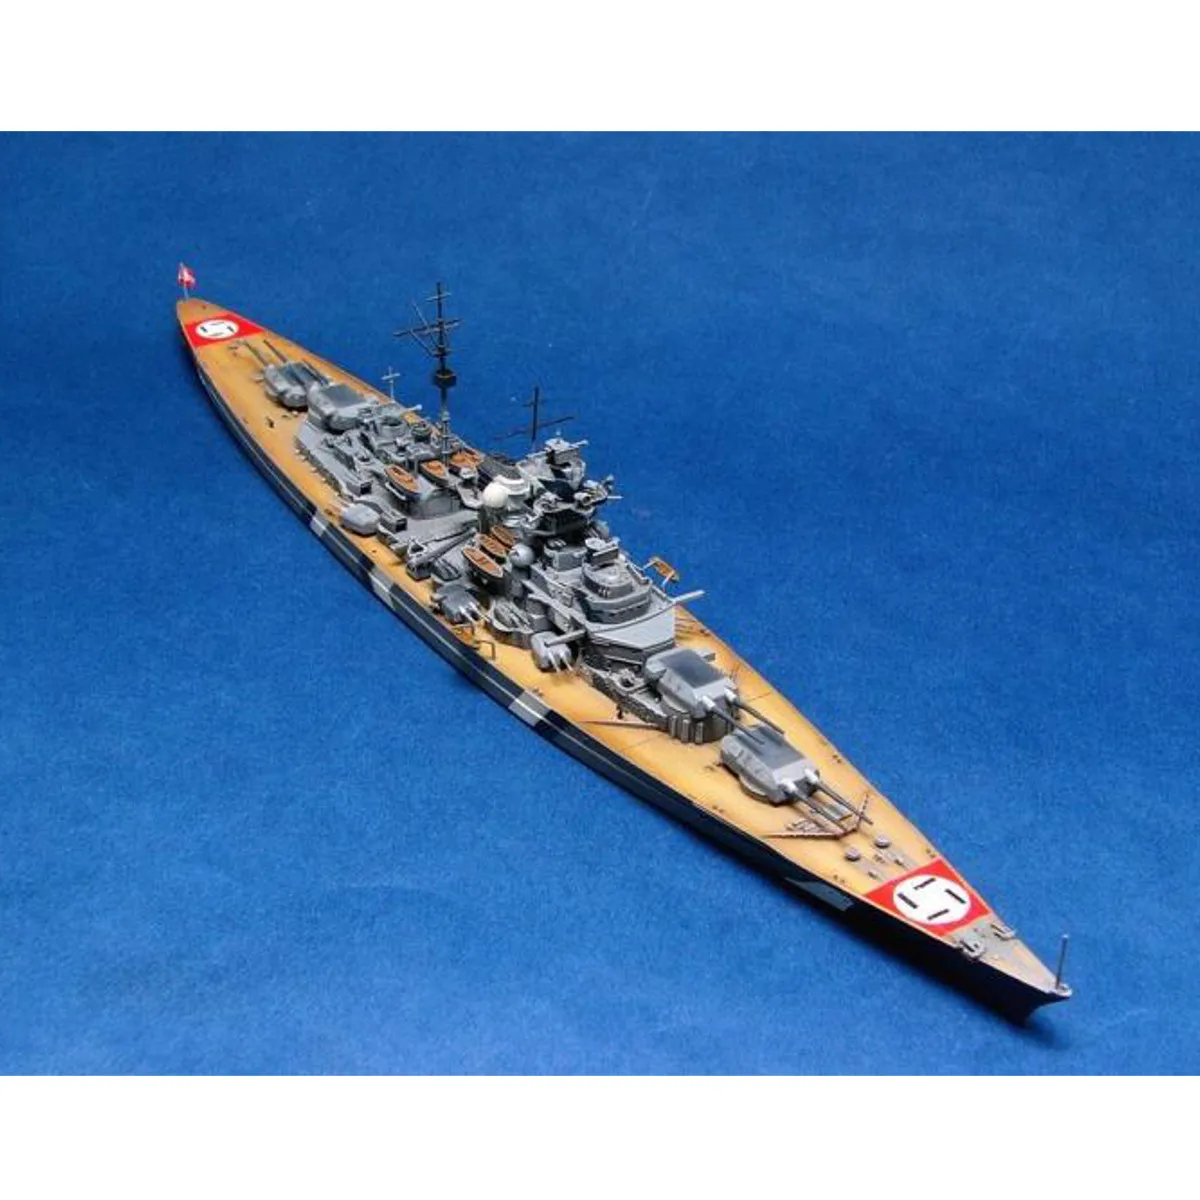 1/700 масштаб Второй мировой войны немецкий морской корабль KMS Bismarck линкор комплект модели корабля корабль игрушка ручная модель сборная игрушка